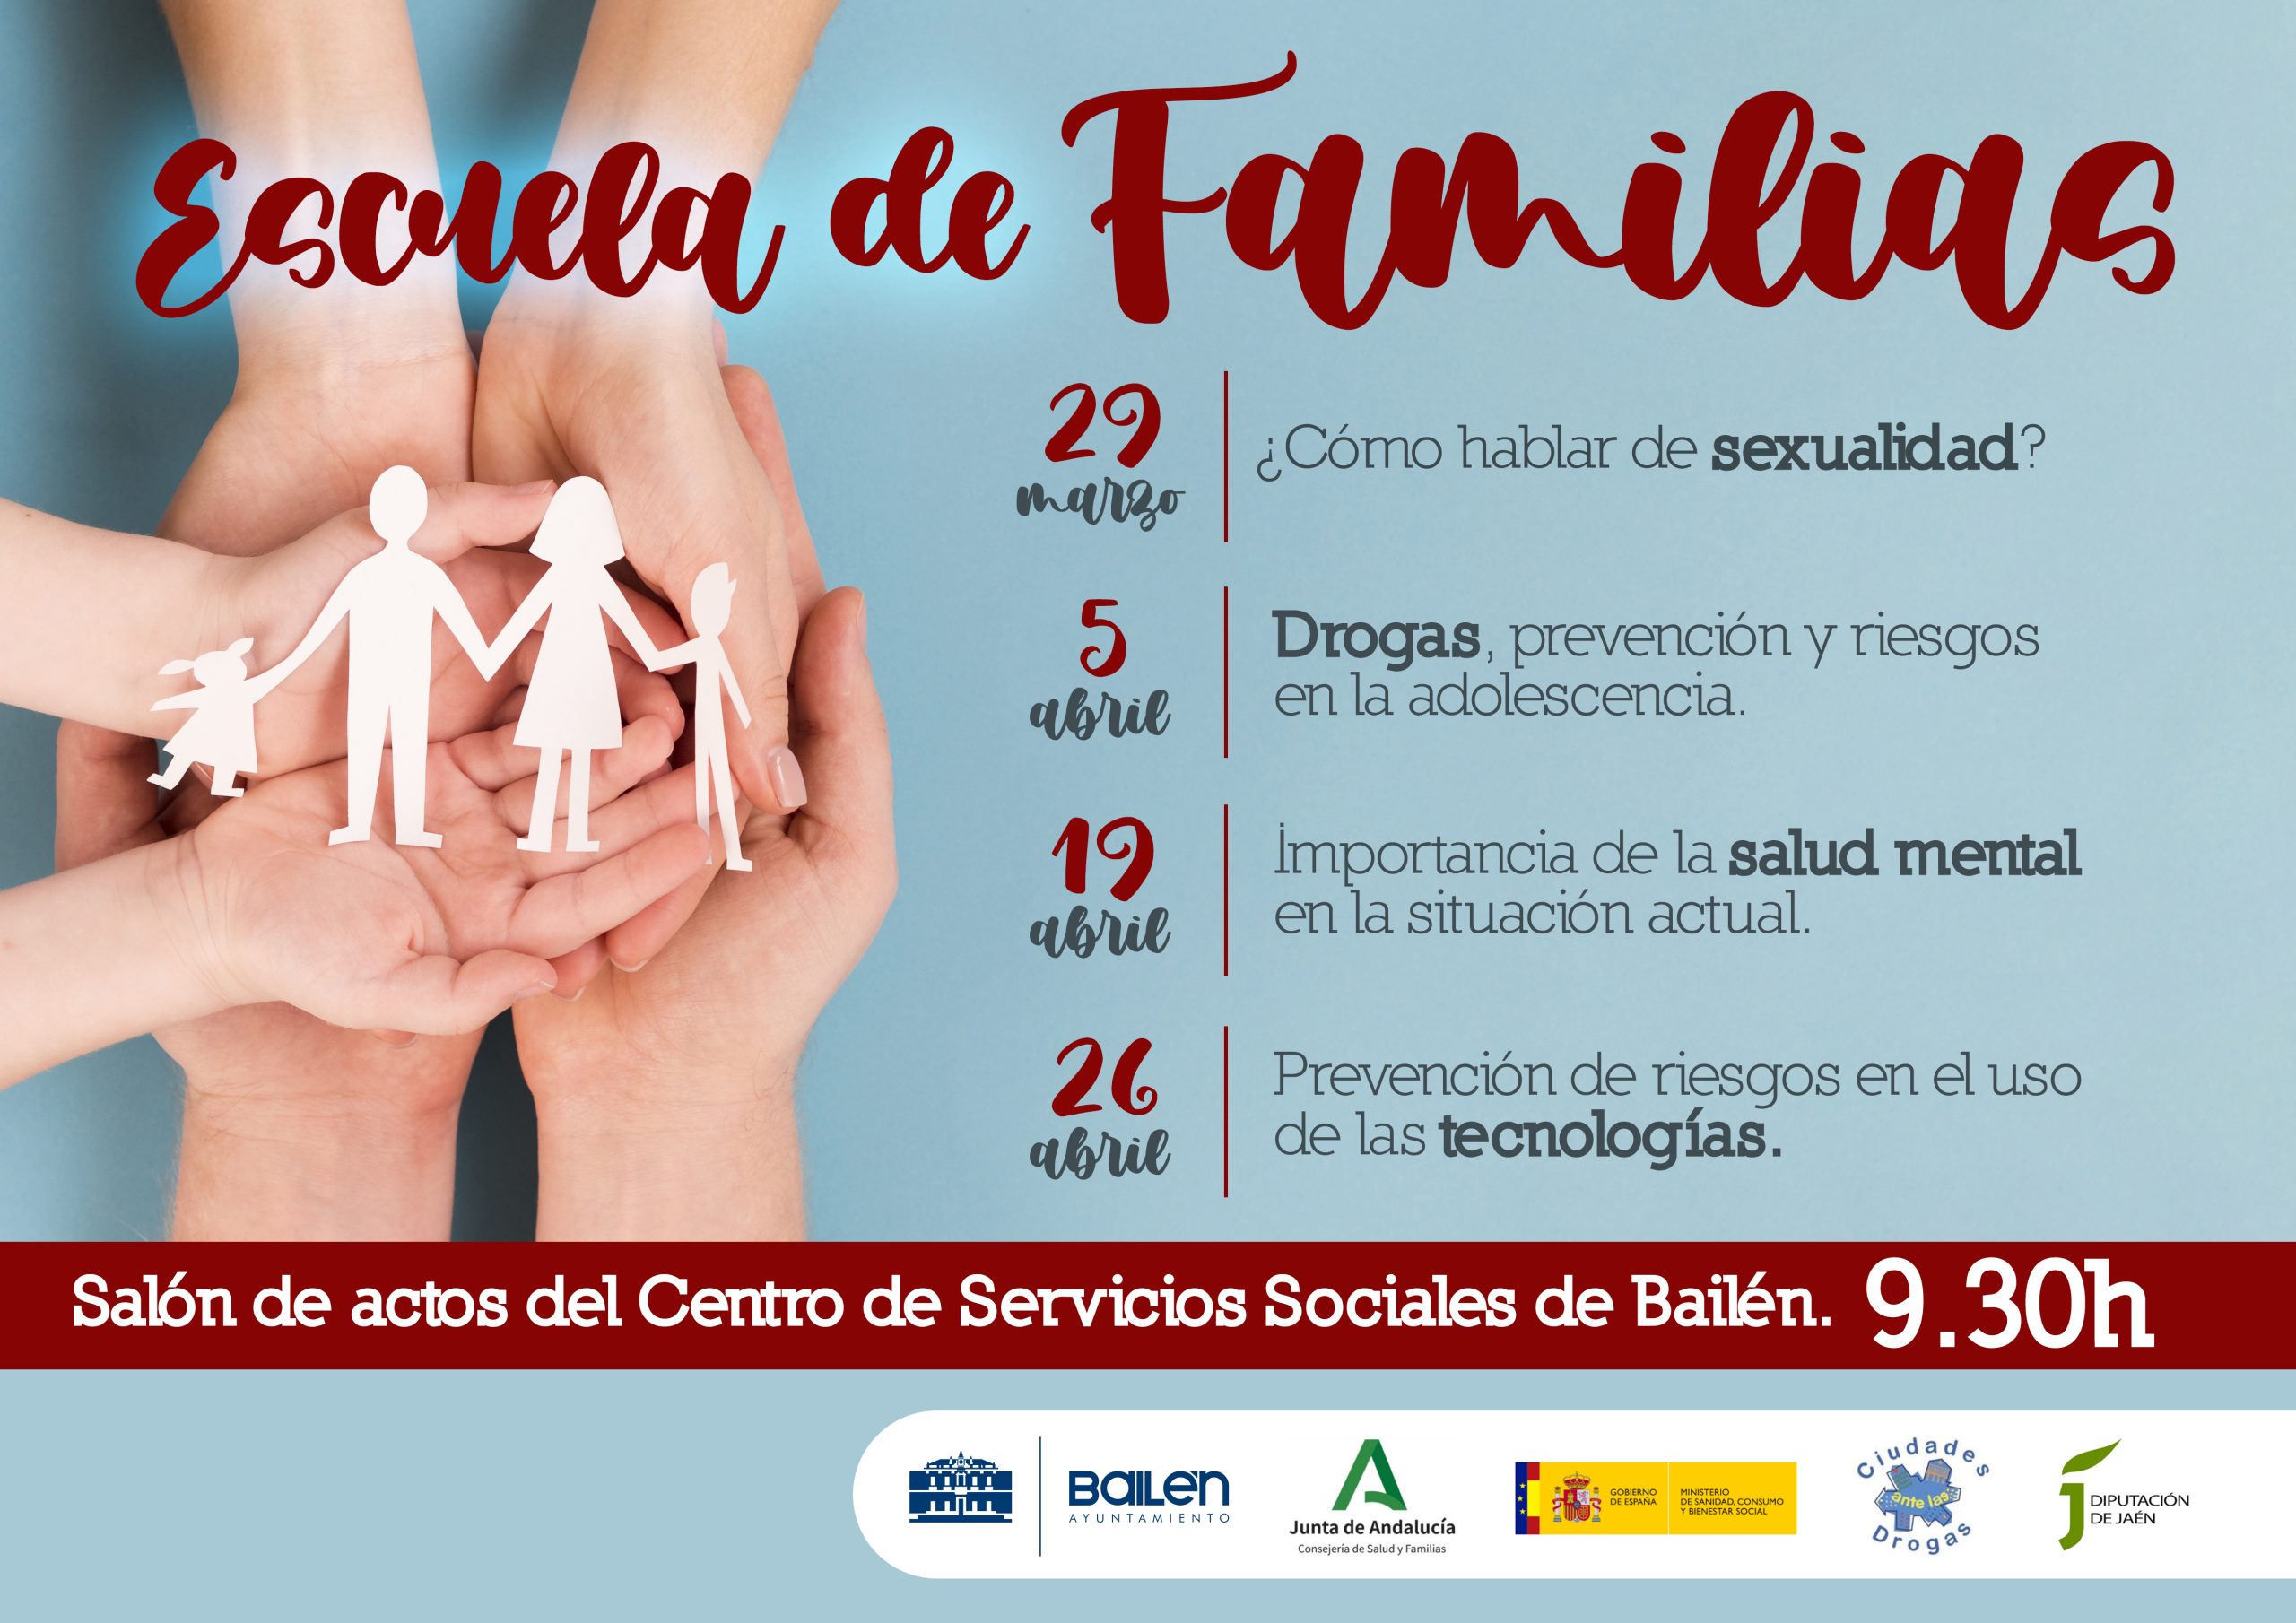 El Ayuntamiento de Bailén pone en marcha la “Escuela de familias” de forma presencial tras la pandemia